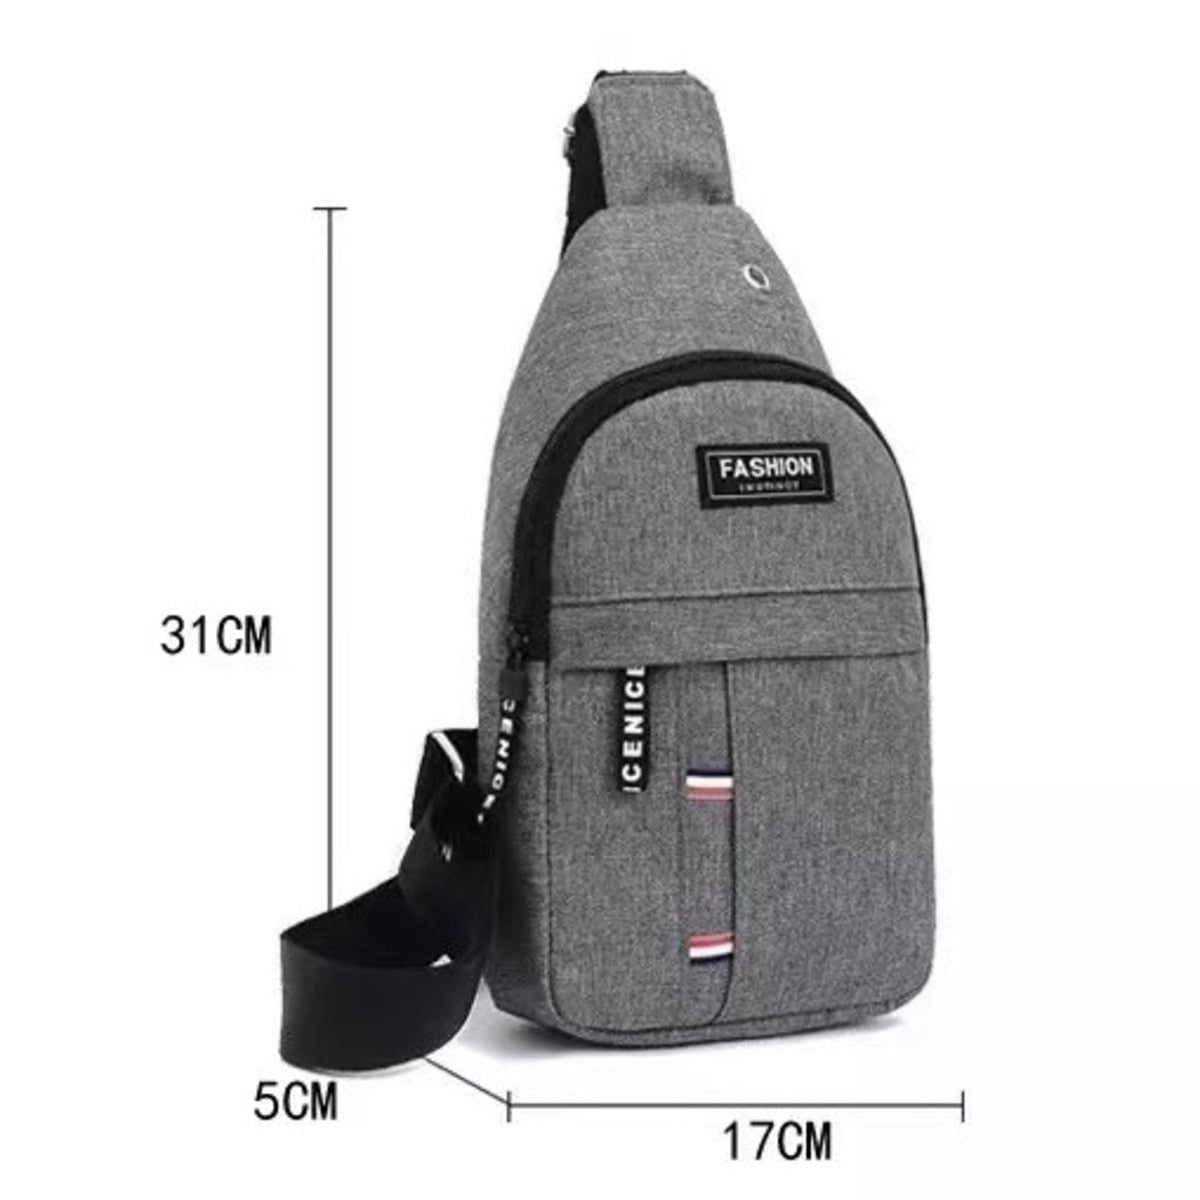 Multifunction Shoulder Bag Men Fashion Crossbody Bag On Shoulder Travel Sling Bag Pack Messenger Pack Chest Bag for Male